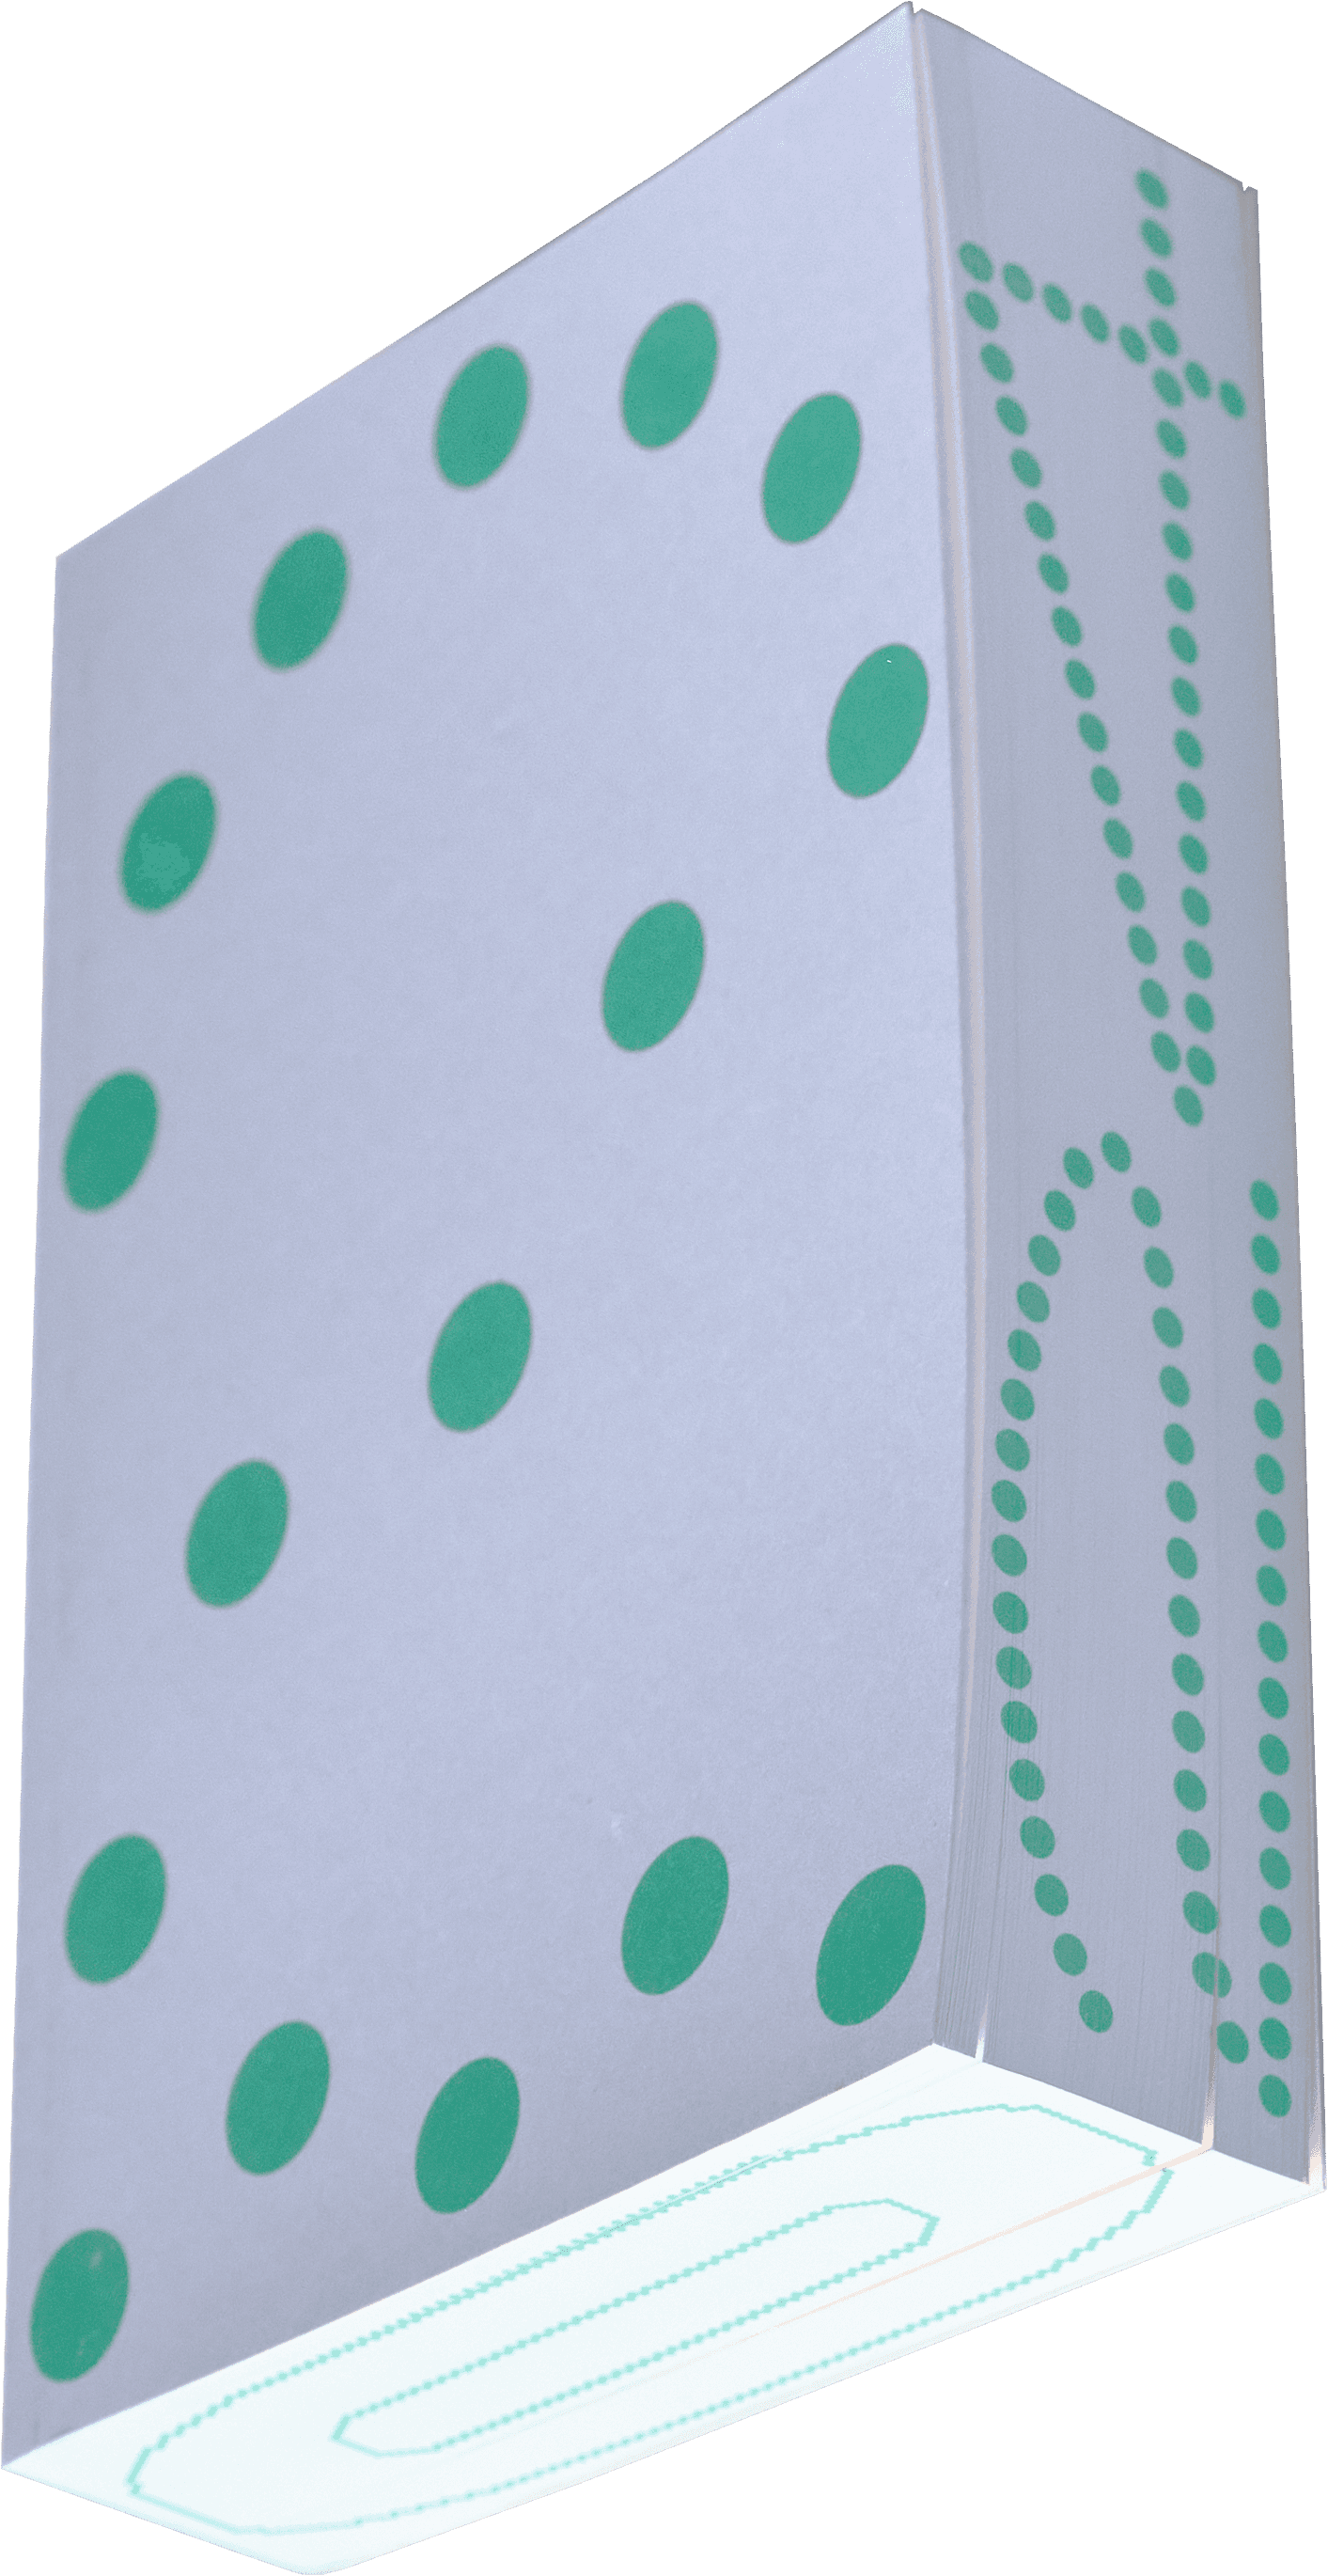 緑ドットと灰色の配色をした図録の切り抜き画像